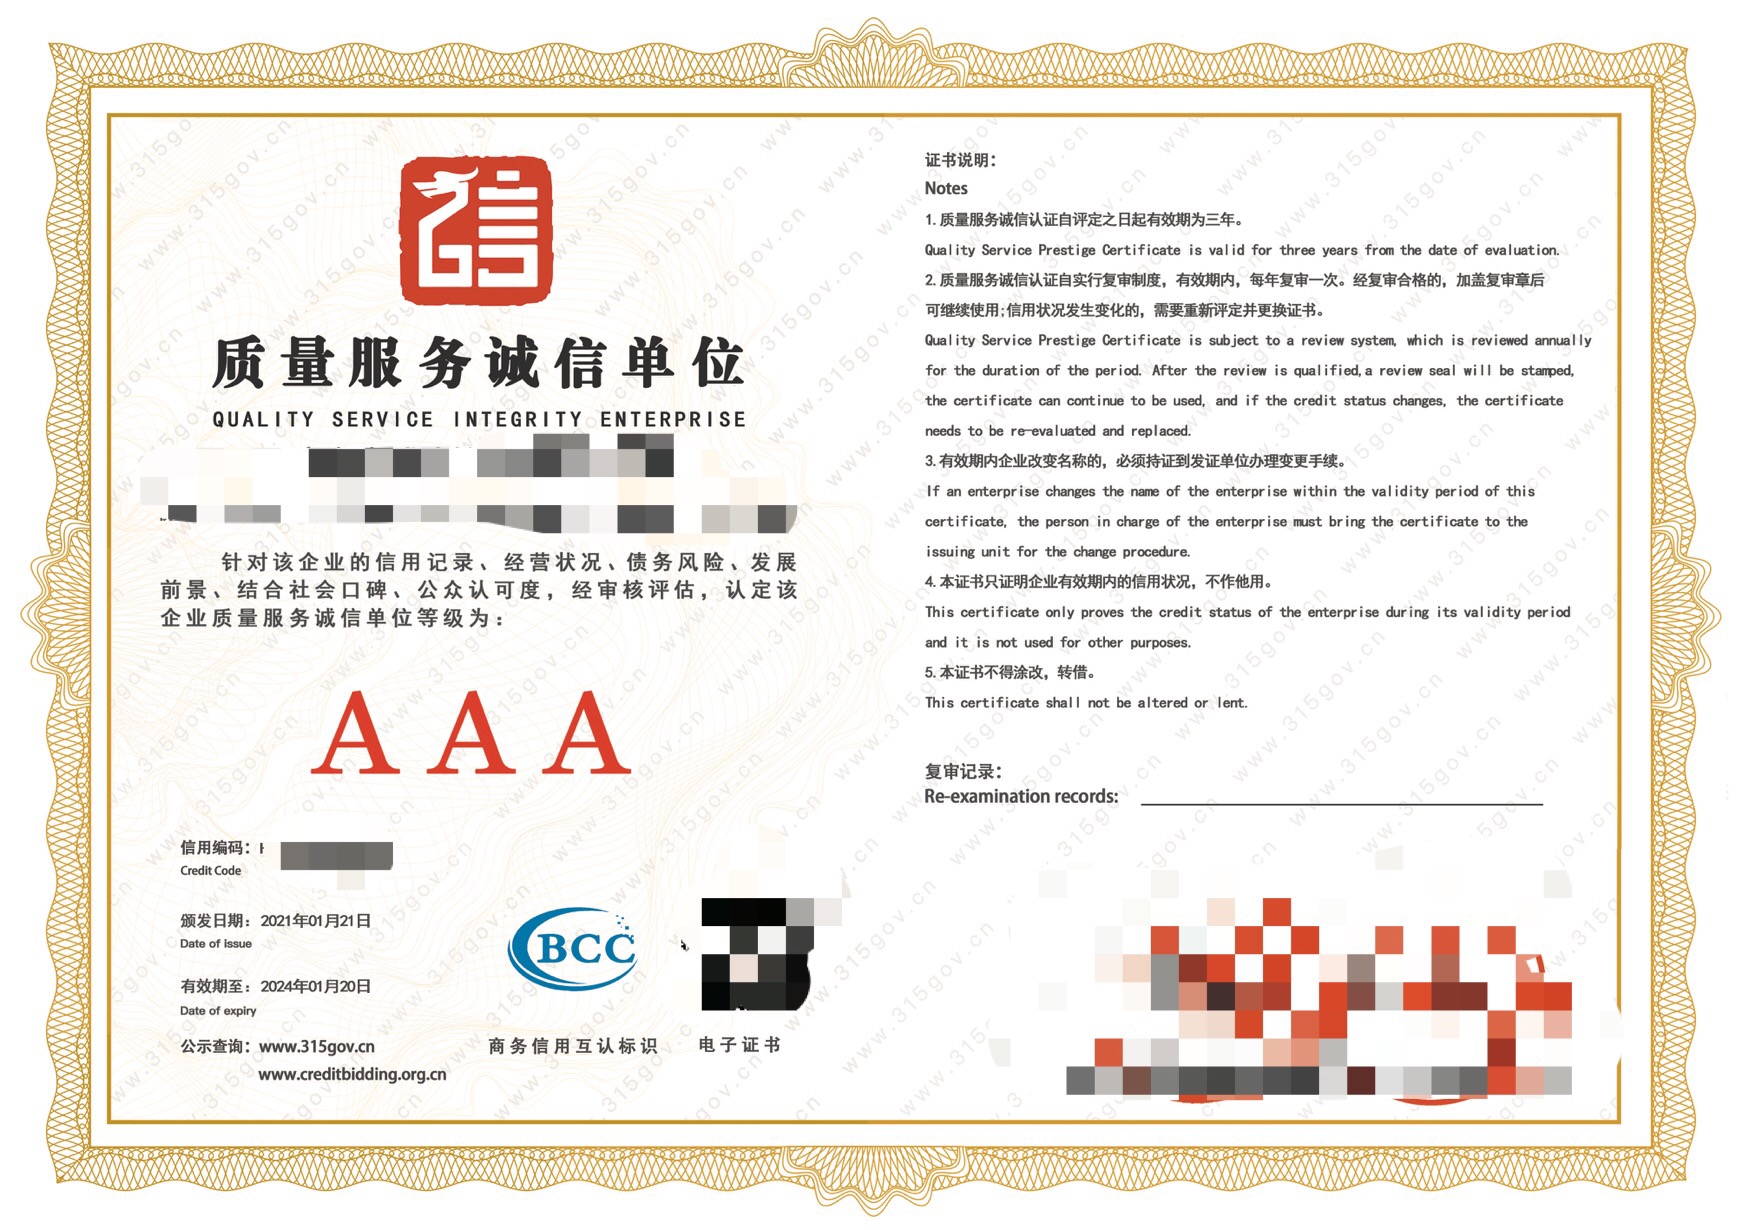 深圳五金AAA級企業認定時間 立卓企業